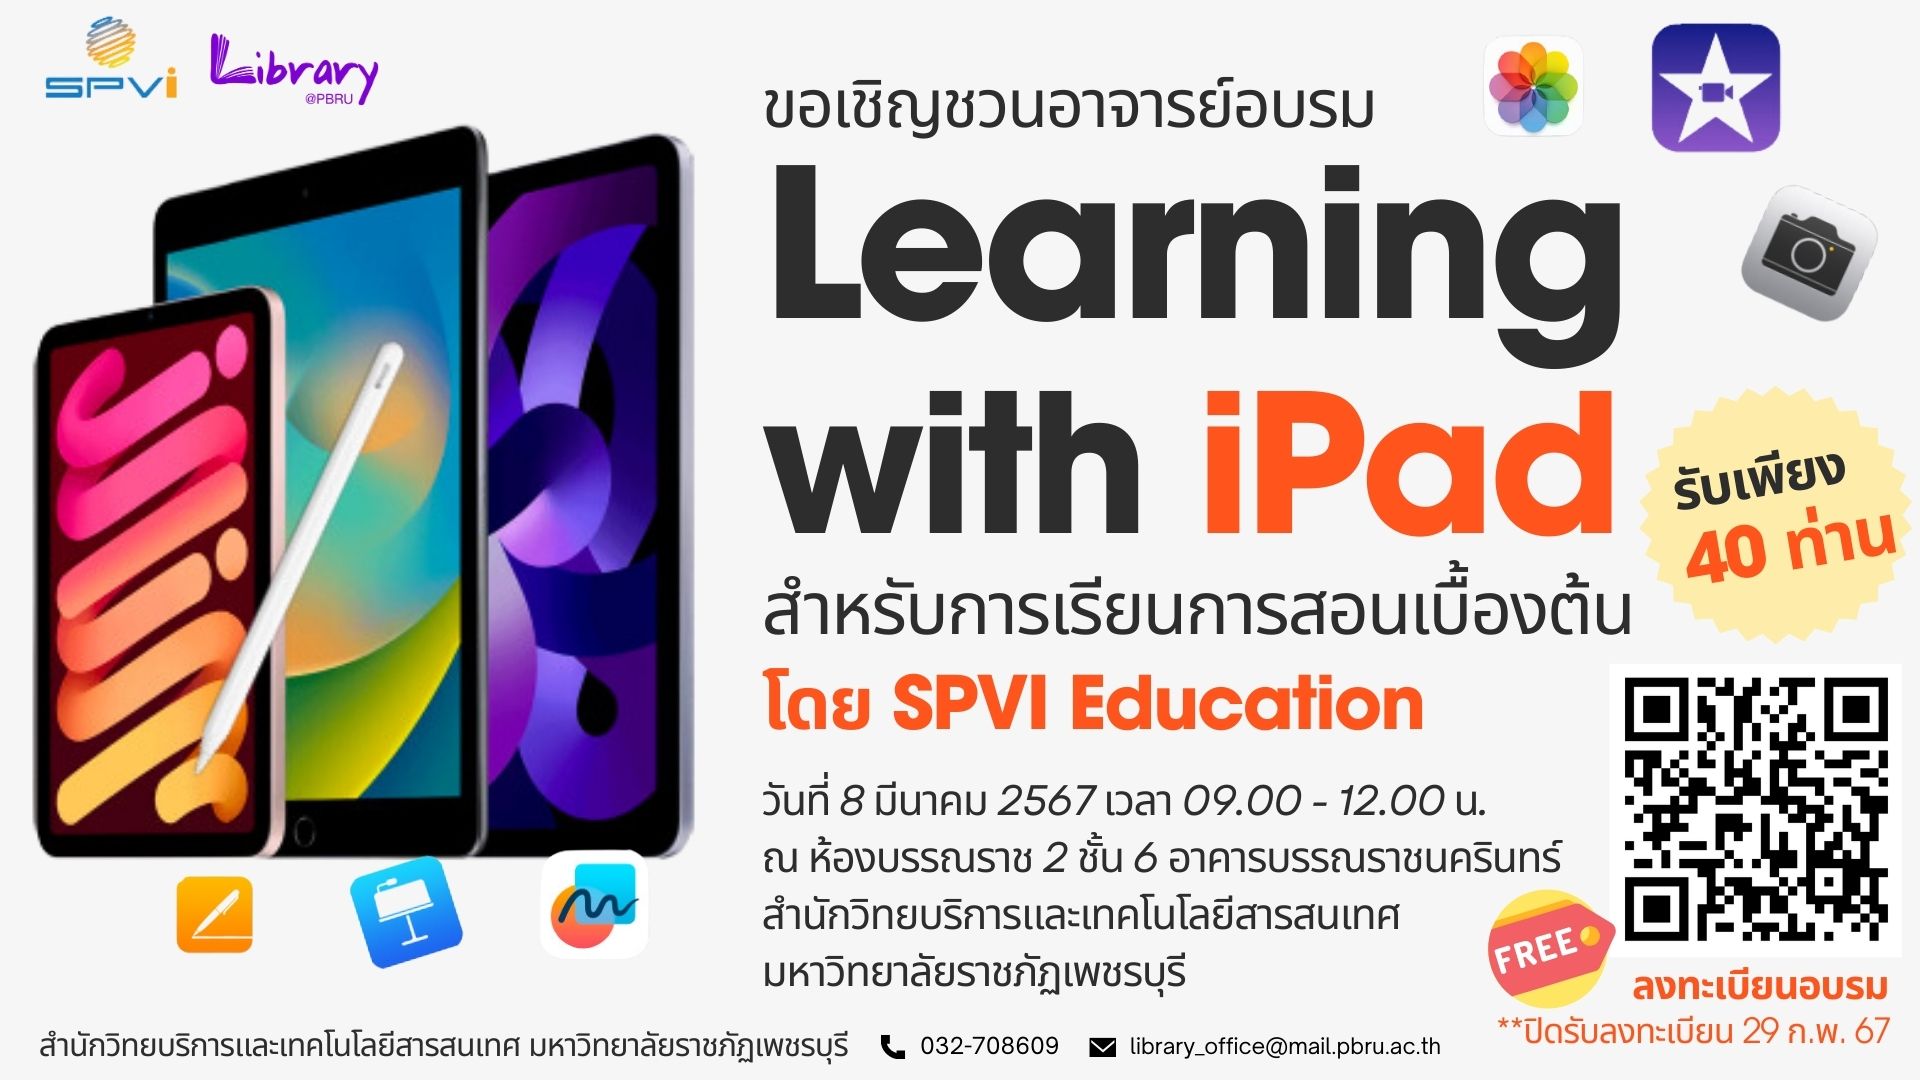 สำนักวิทยบริการและเทคโนโลยีสารสนเทศ ขอเชิญชวนอาจารย์มหาวิทยาลัยราชภัฏเพชรบุรี อบรม หลักสูตร "Learning with iPad สำหรับการเรียนการสอนเบื้องต้น อบรมฟรี !!  รับจำนวนจำกัด เพียง 40 ท่าน เท่านั่น